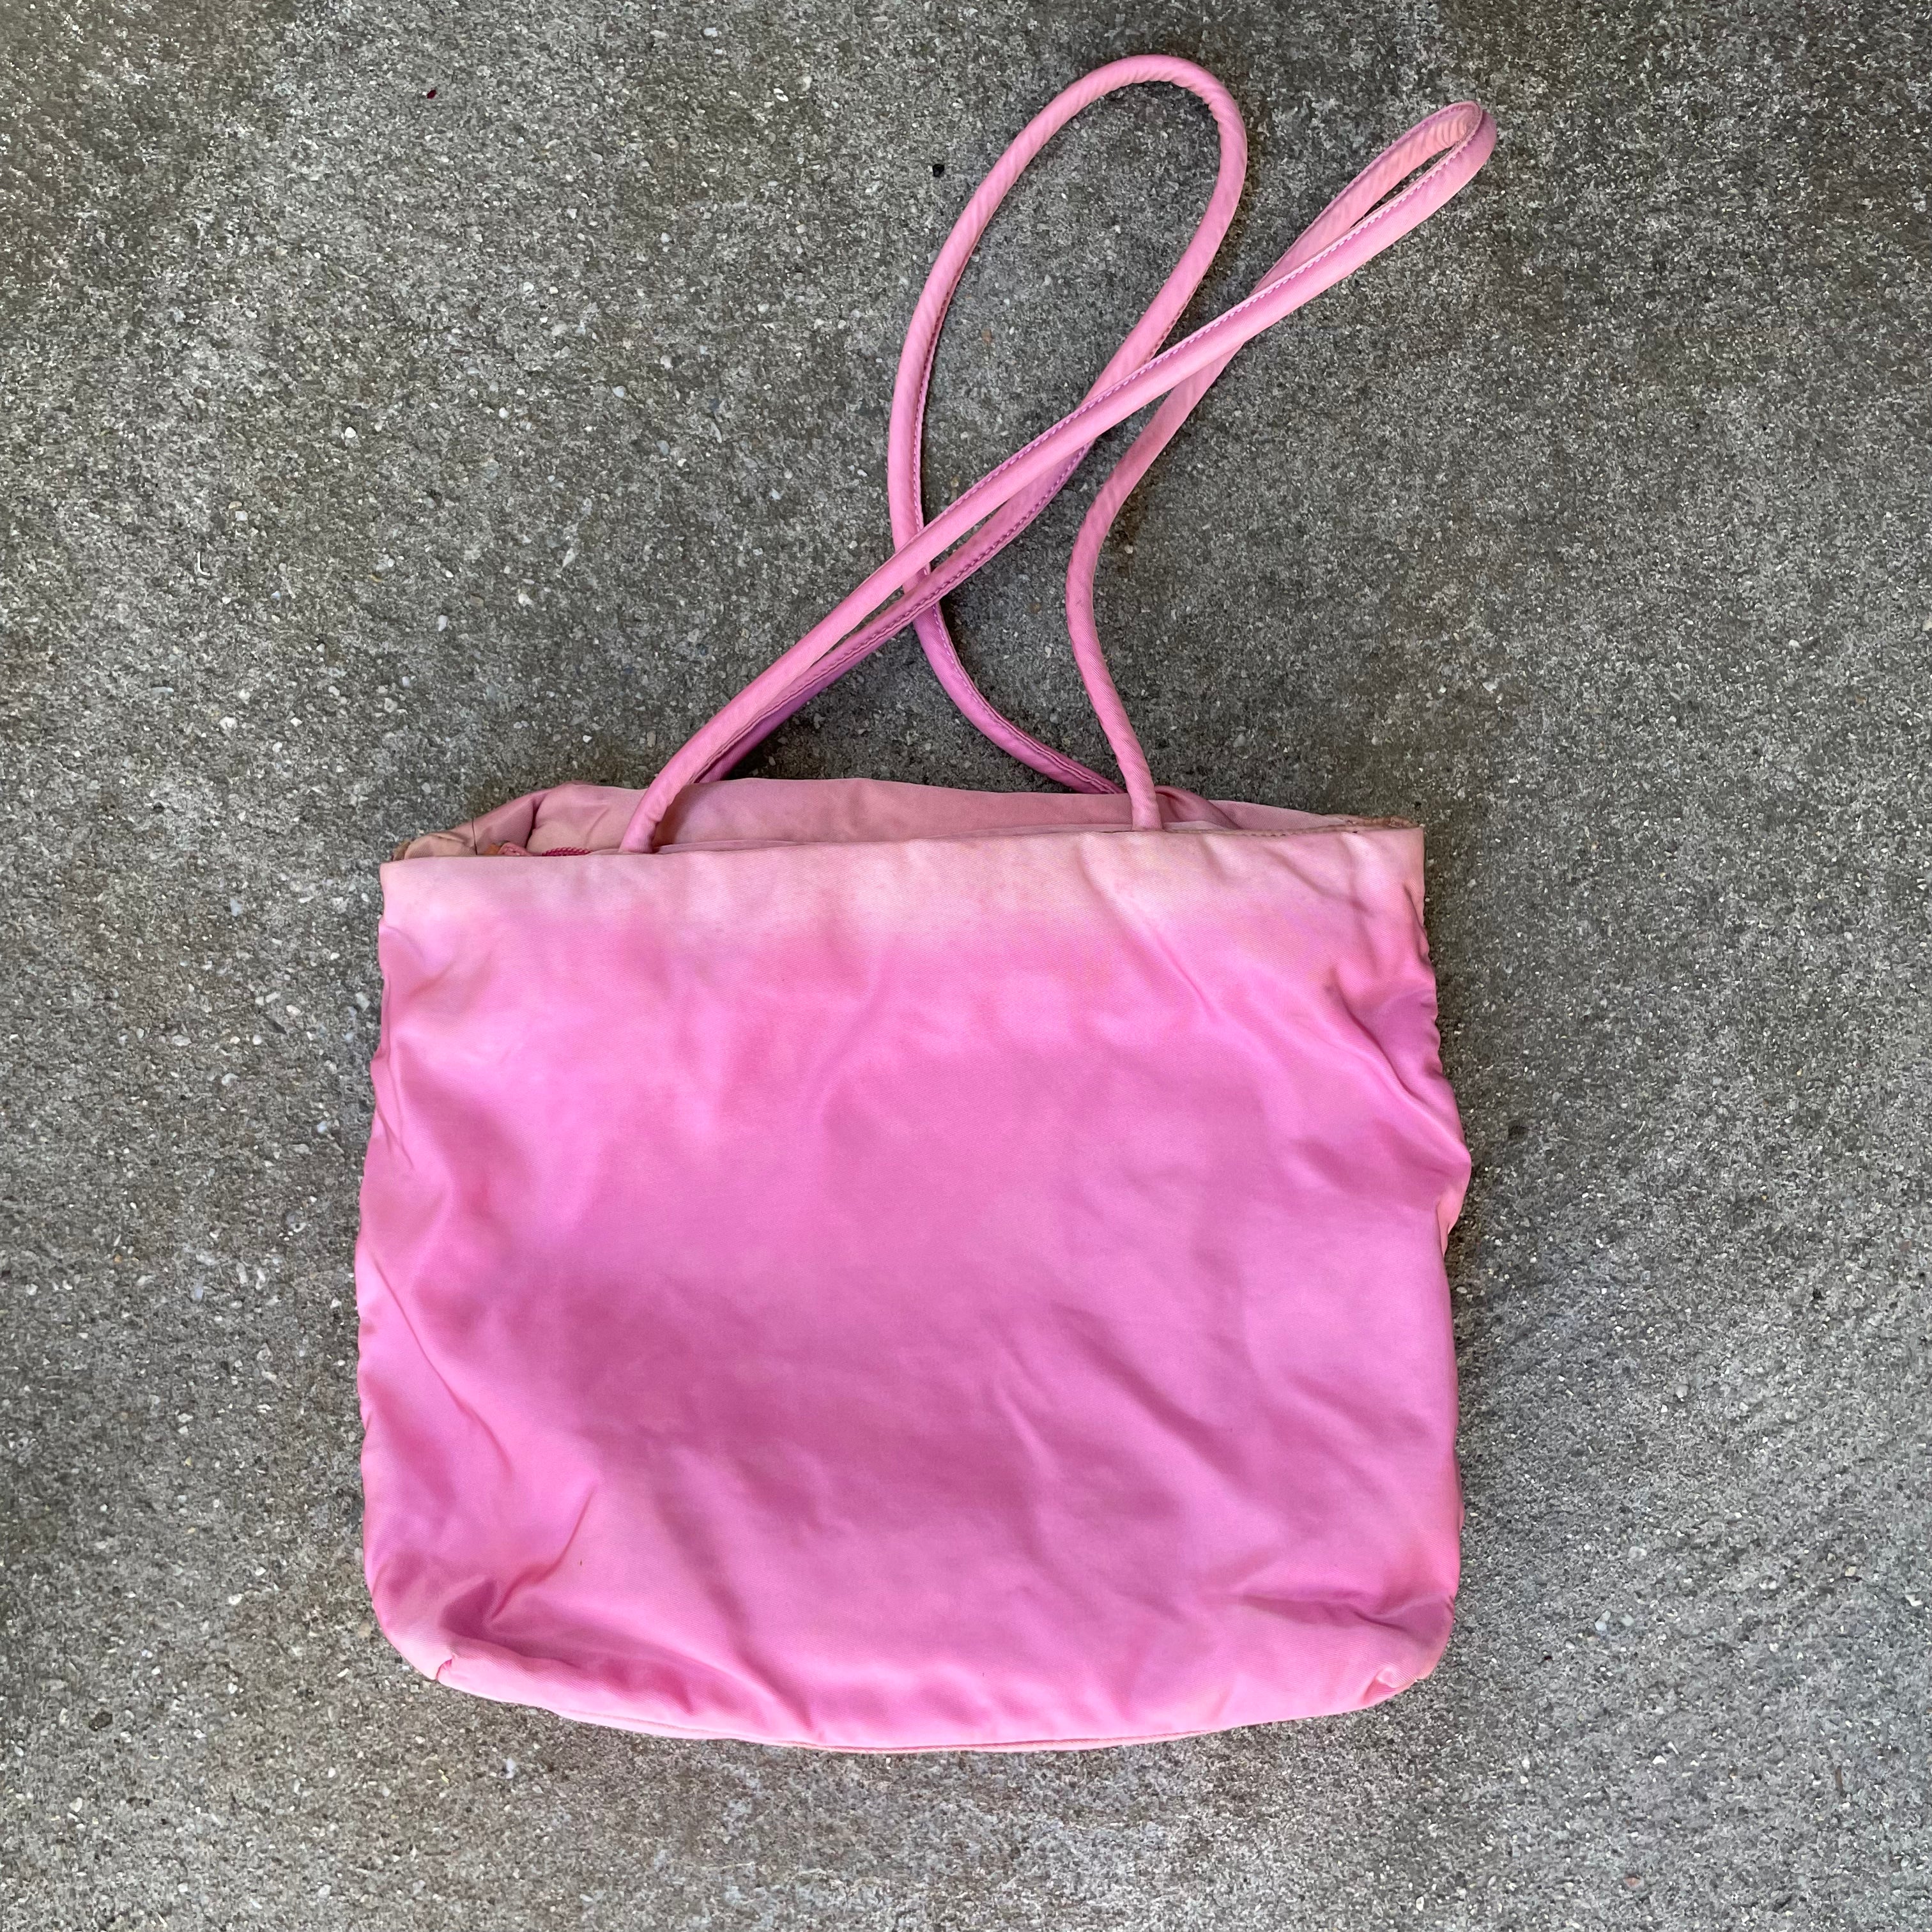 Prada Nylon Pink Tote Bag